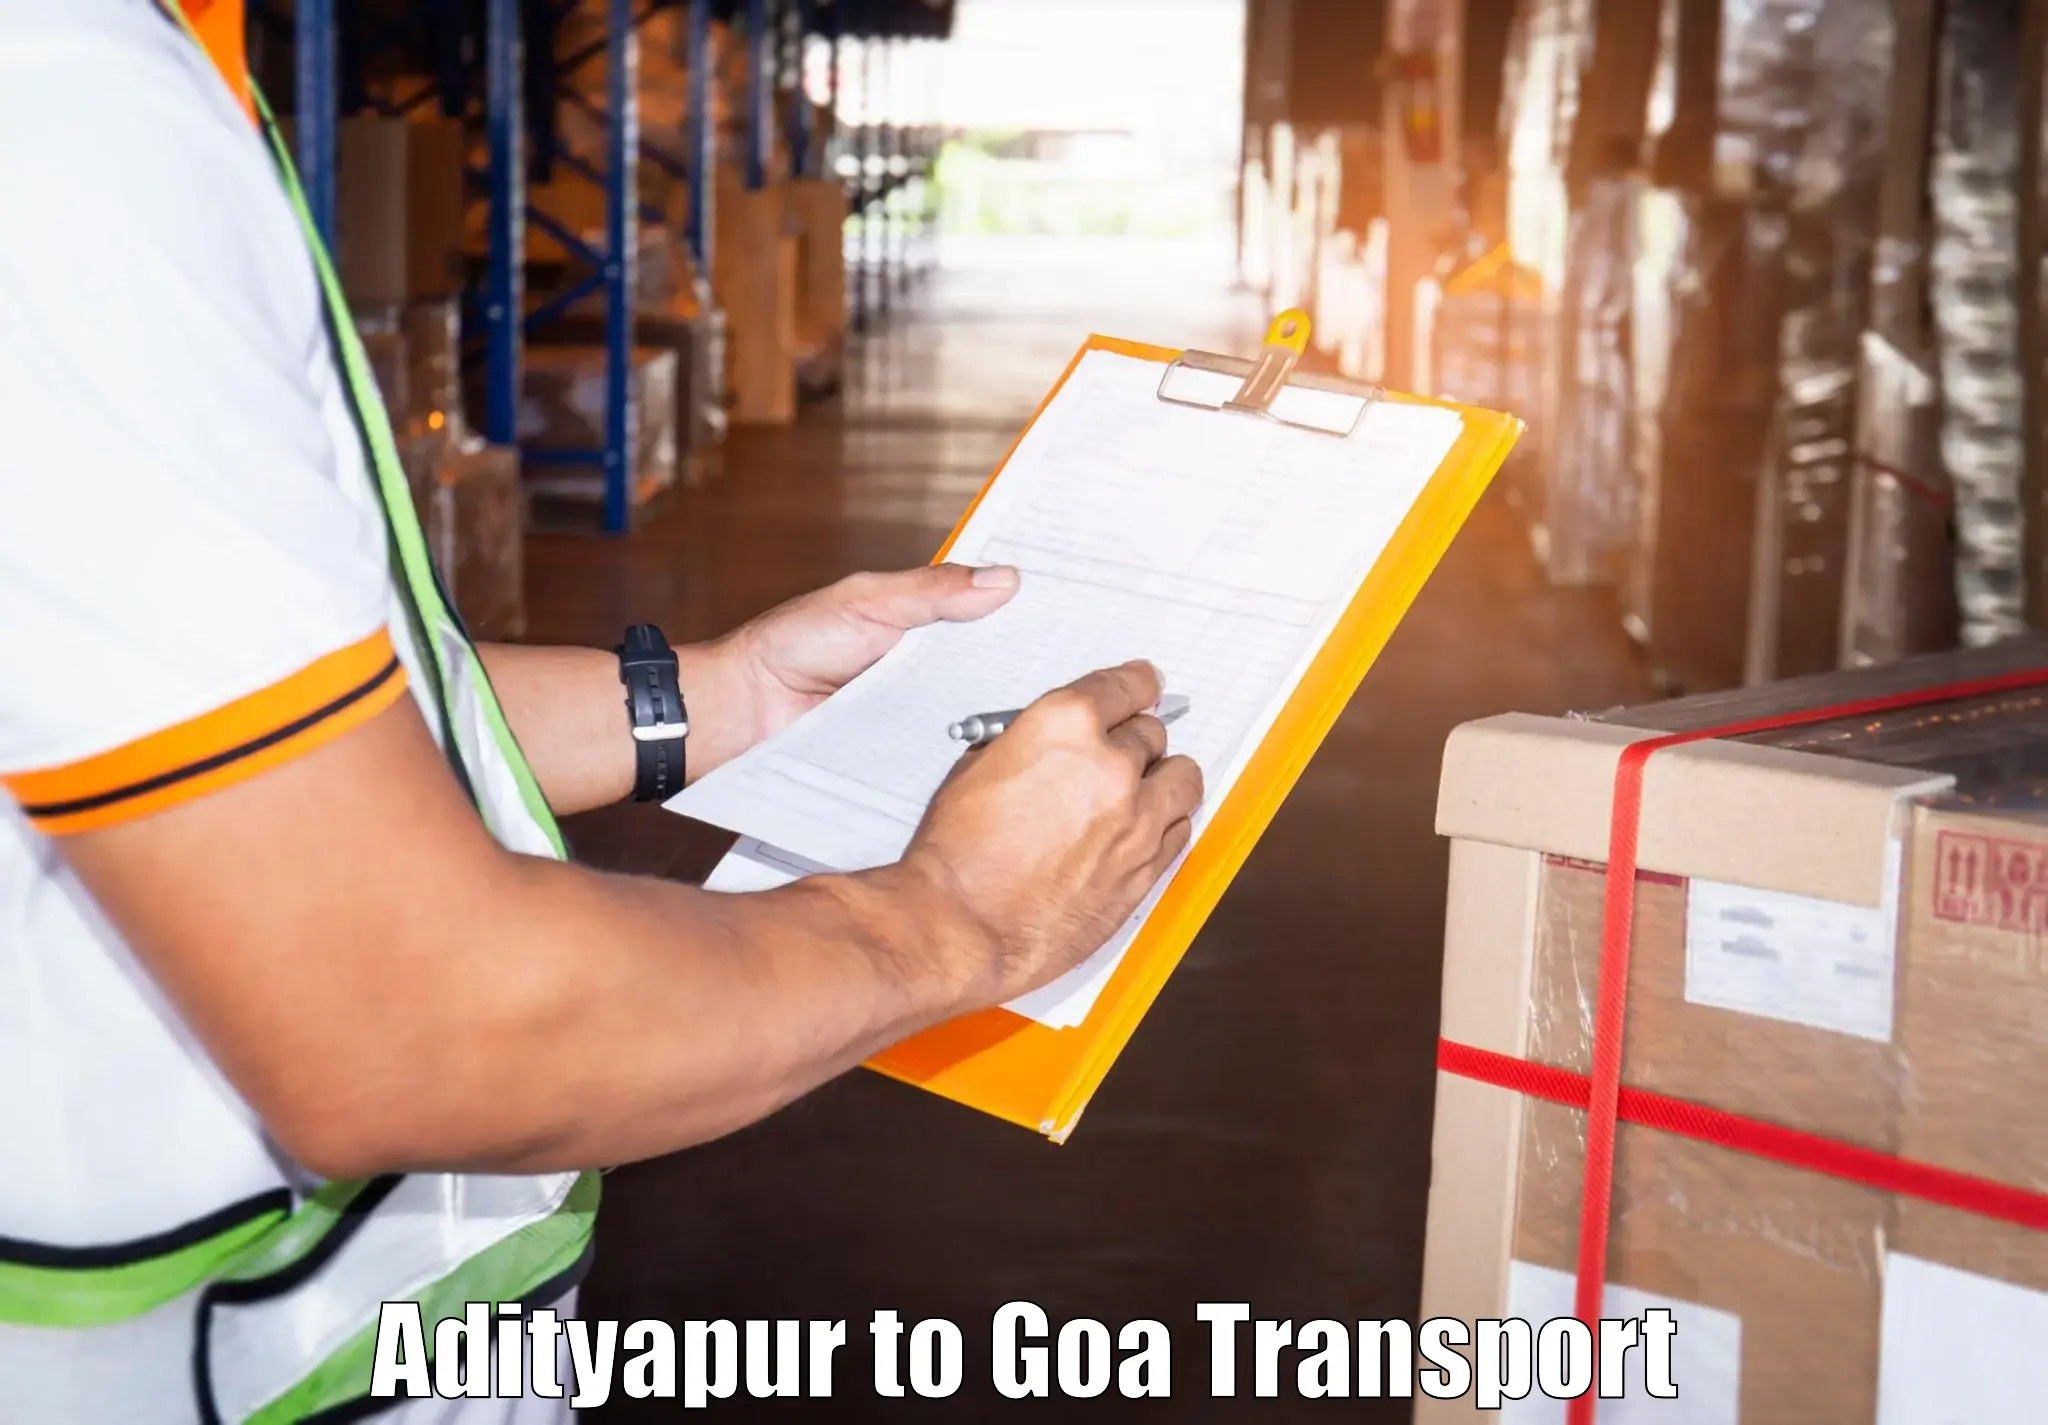 Container transport service Adityapur to Mormugao Port